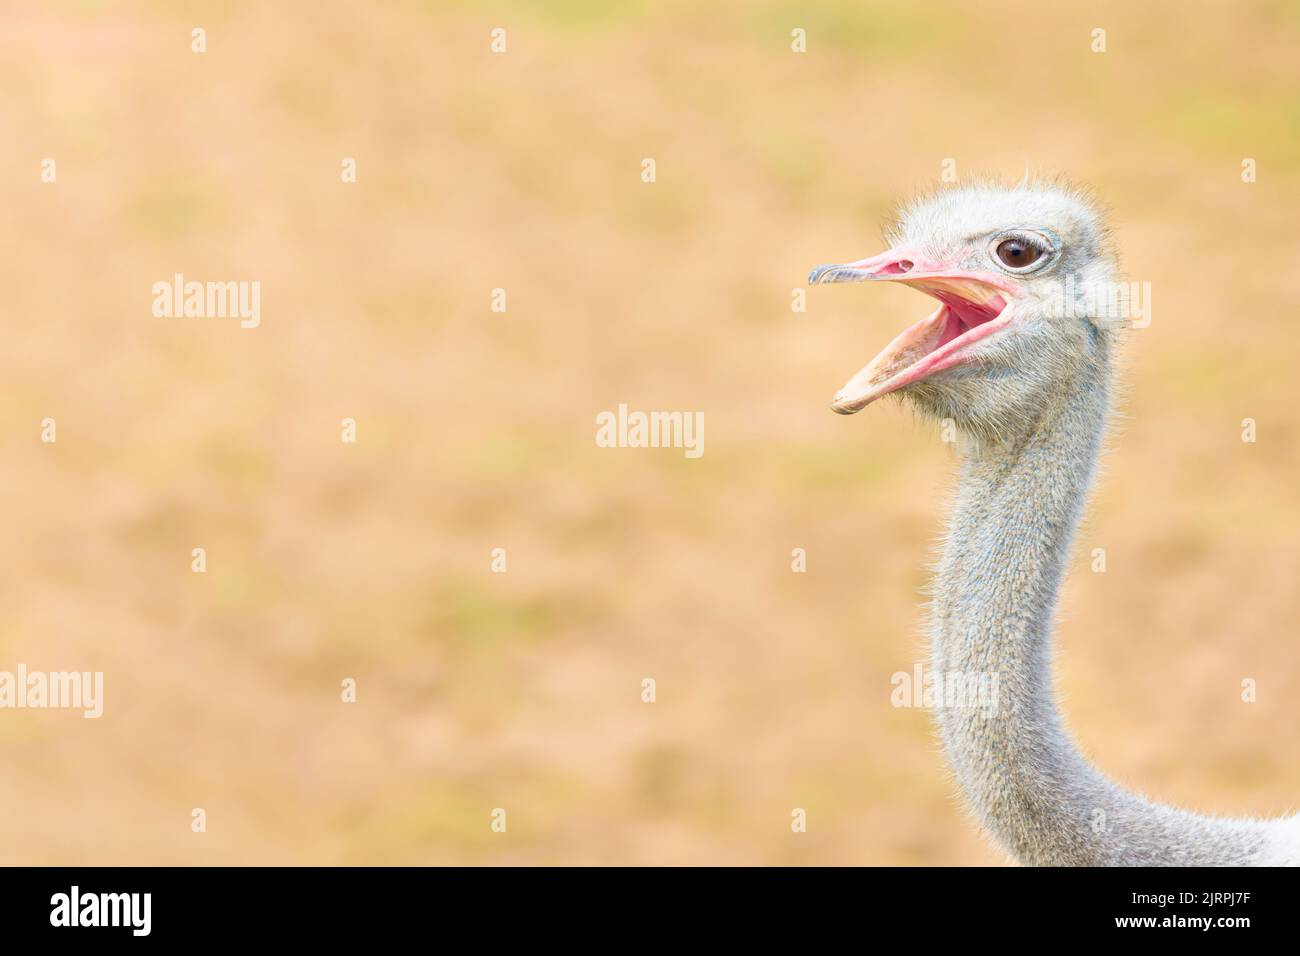 Primer plano de la divertida cabeza y el cuello de avestruz con pico abierto, mirando la cámara con expresión de risa o sonrisa. Foto de stock